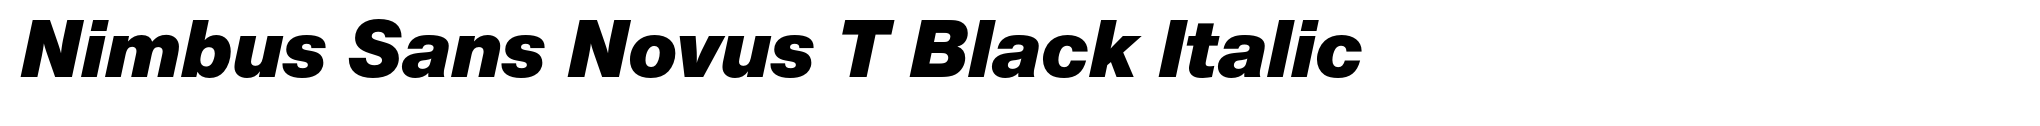 Nimbus Sans Novus T Black Italic image